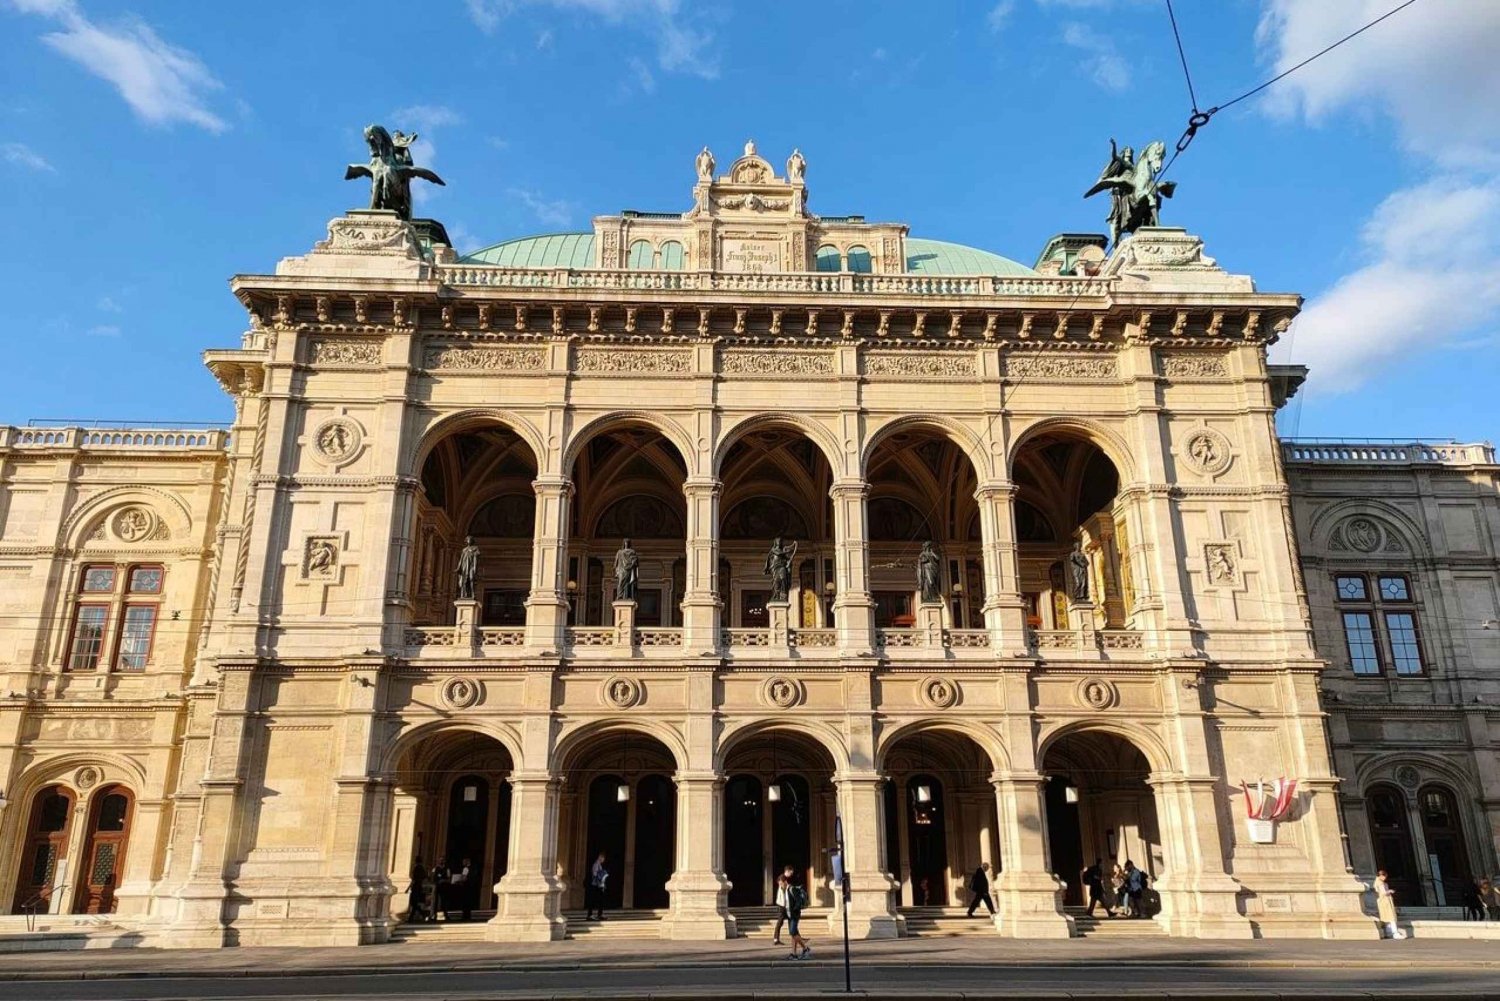 Wien Historiske højdepunkter byrundtur + Hofburg